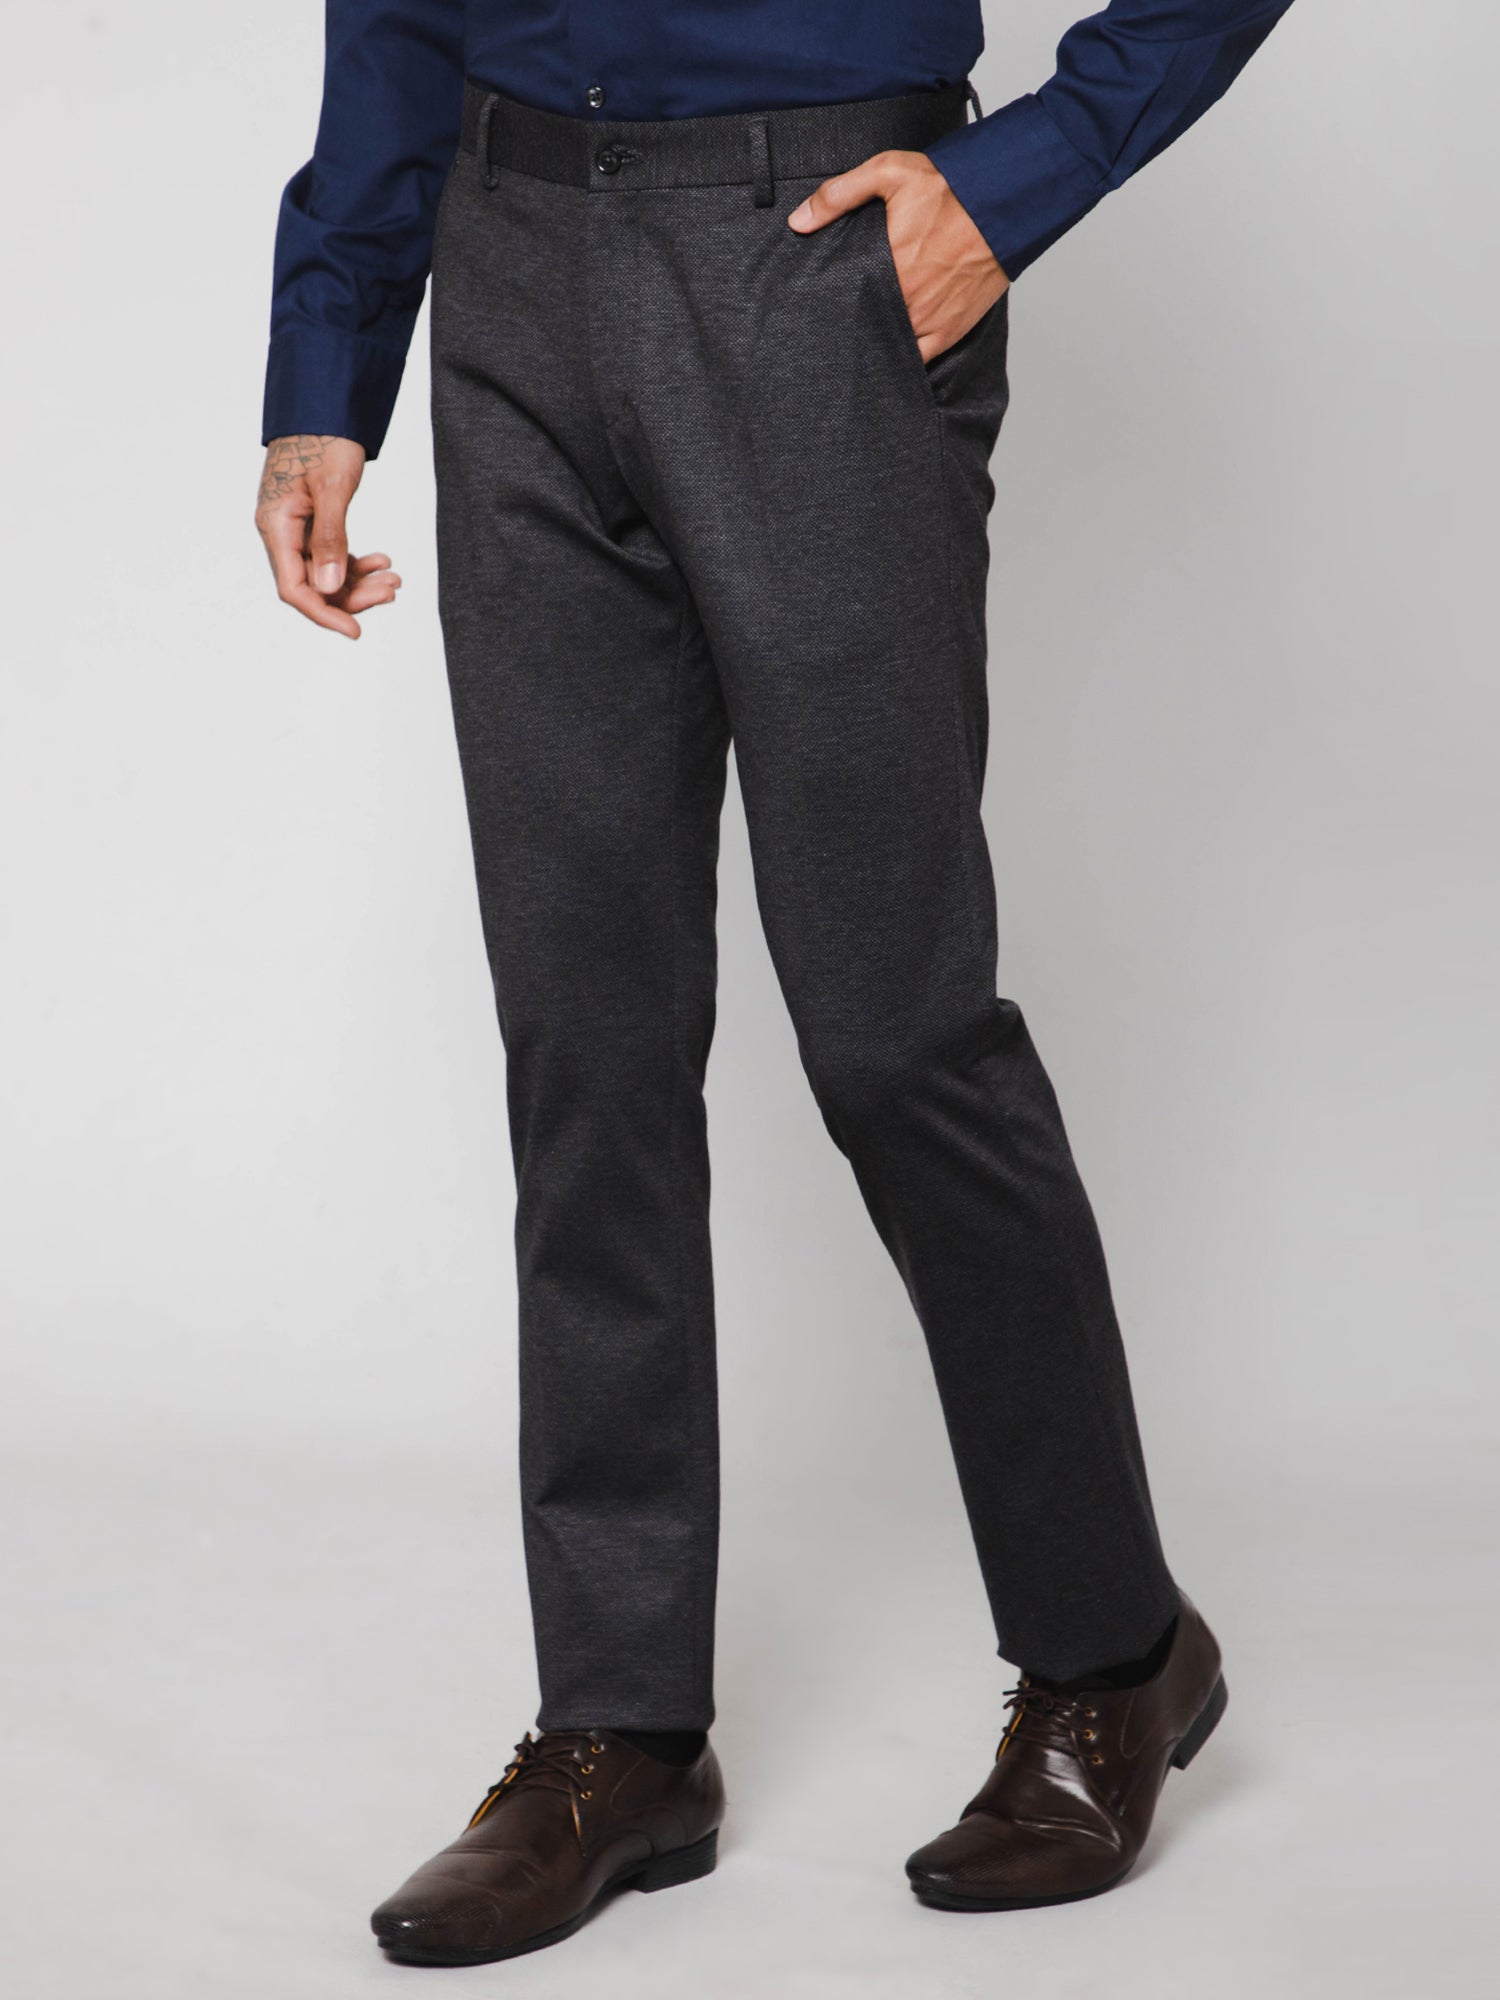 Buy Van Heusen Grey Trousers Online  812034  Van Heusen